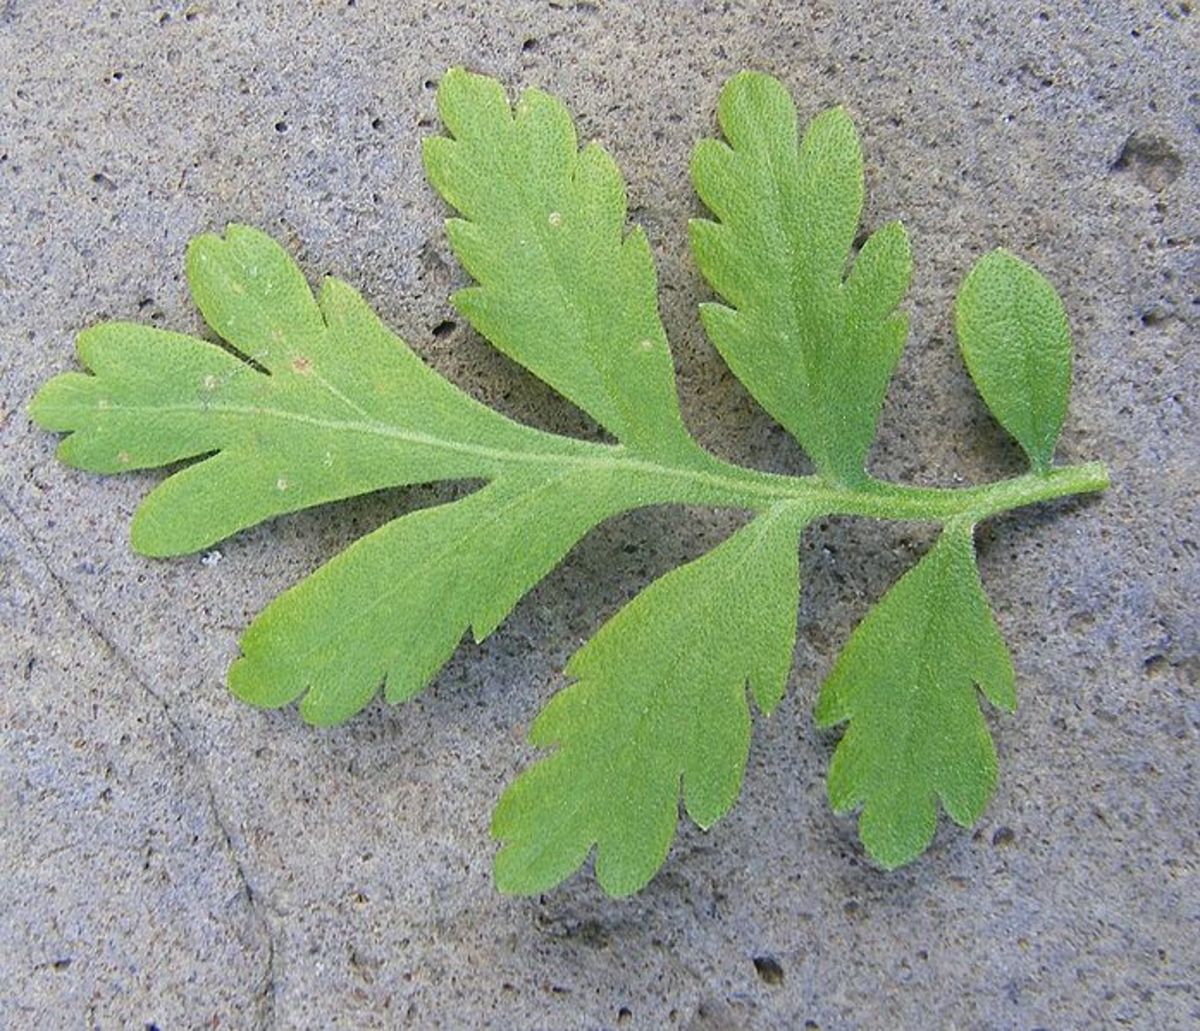 Leaf of the feverfew plant